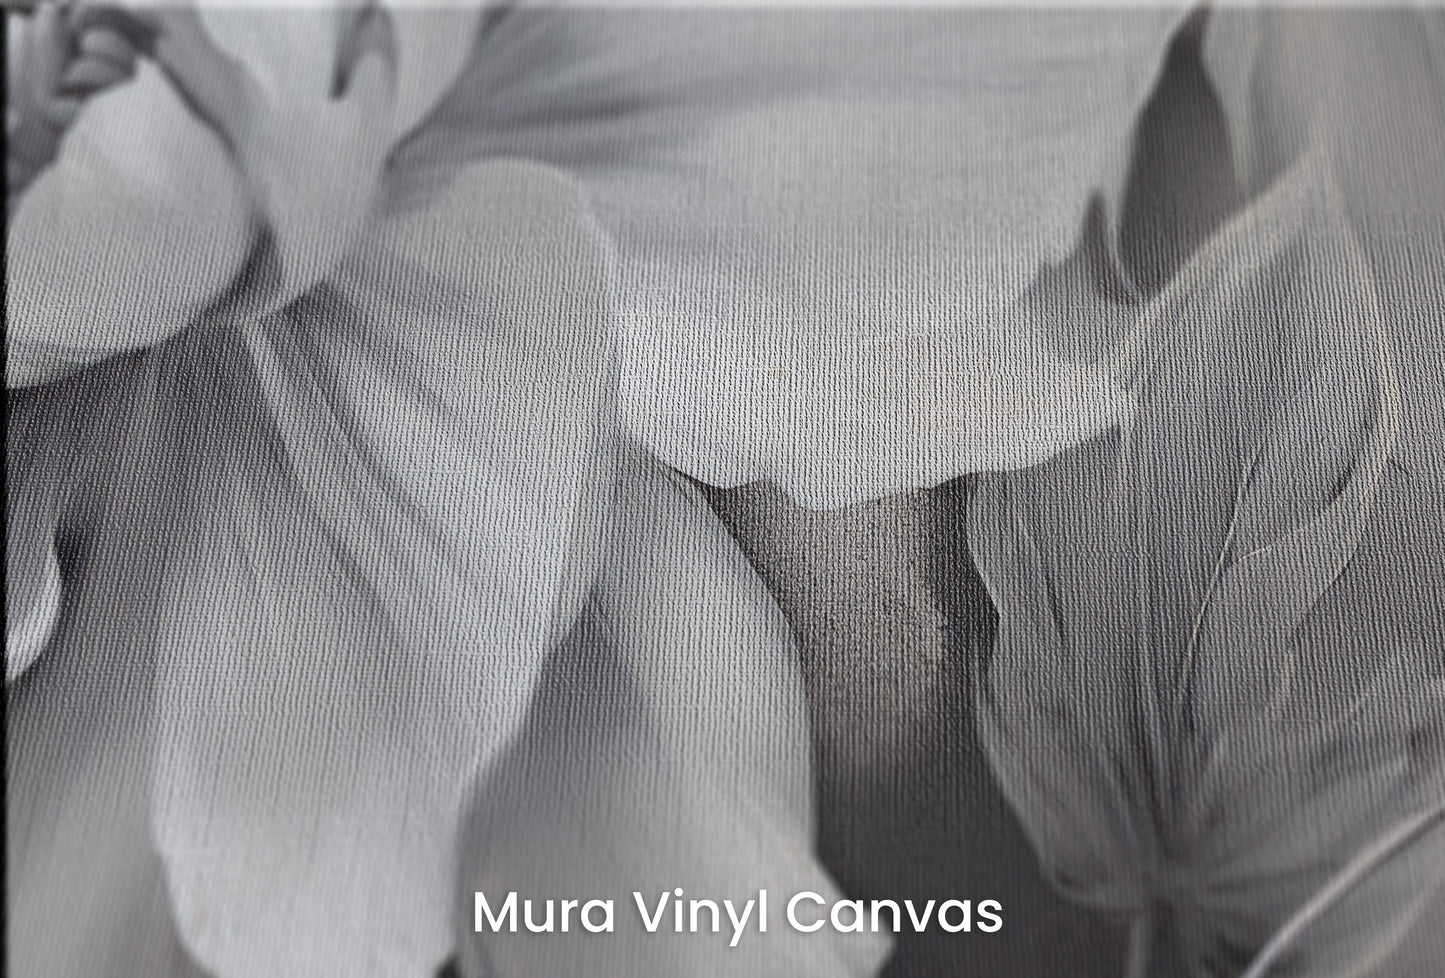 Zbliżenie na artystyczną fototapetę o nazwie NOCTURNAL FLORAL WHISPERS na podłożu Mura Vinyl Canvas - faktura naturalnego płótna.